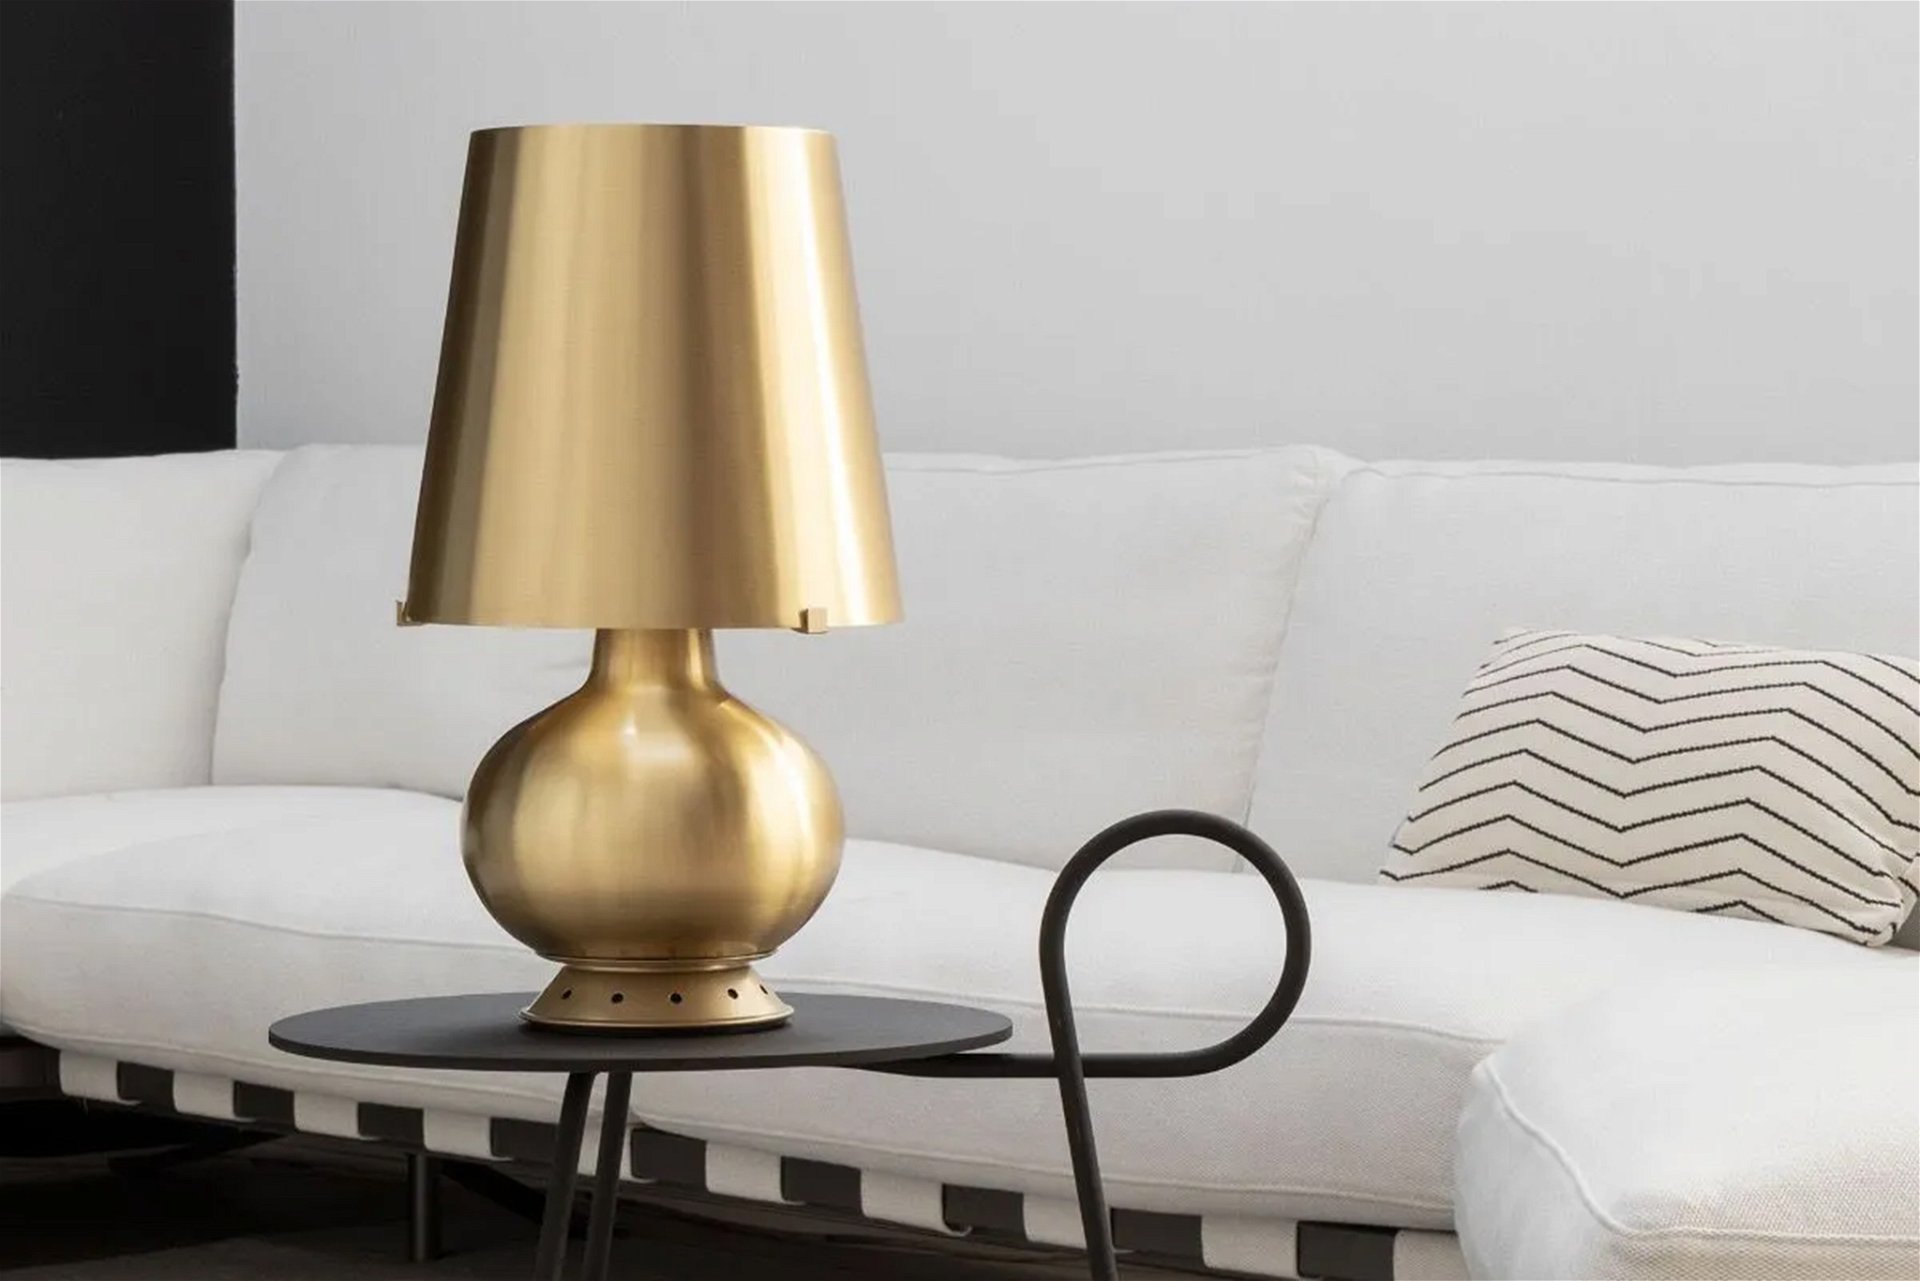 Die Lampe wurde 1954 von dem berühmten französischen Dekorateur Max Ingrand entworfen und hieß ursprünglich »1853« und später »Fontana«, als Hommage an sein Unternehmen. fontanaarte.com